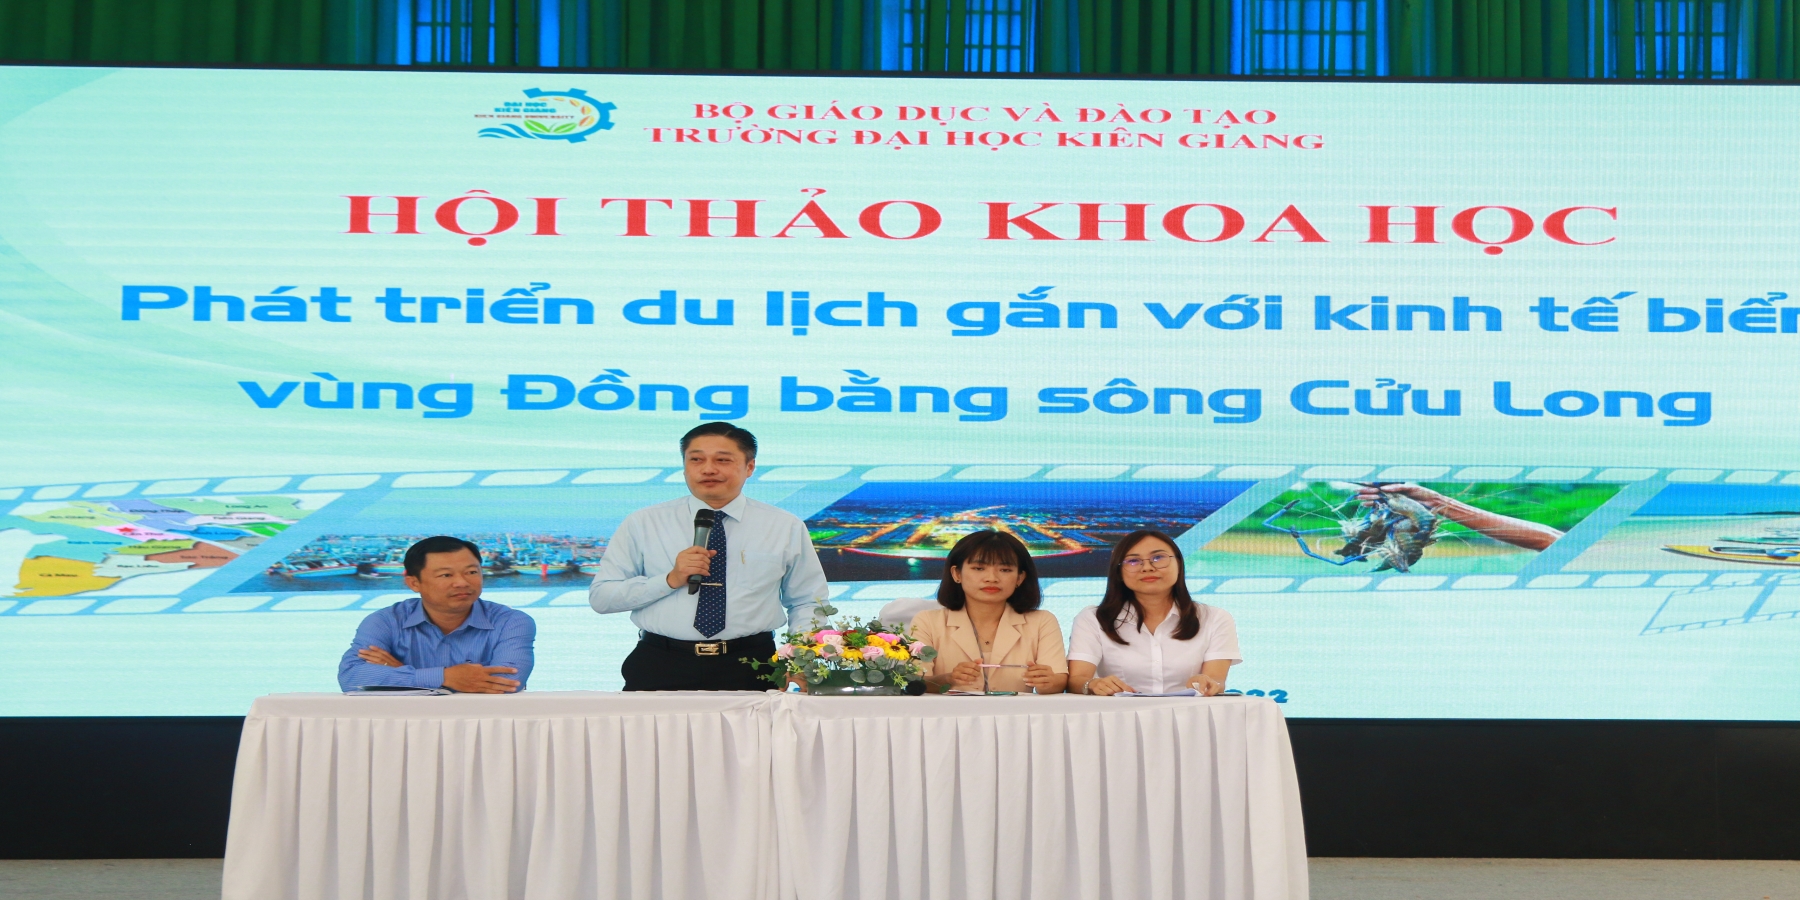 Phát triển du lịch gắn với kinh tế biển vùng Đồng bằng sông Cửu Long